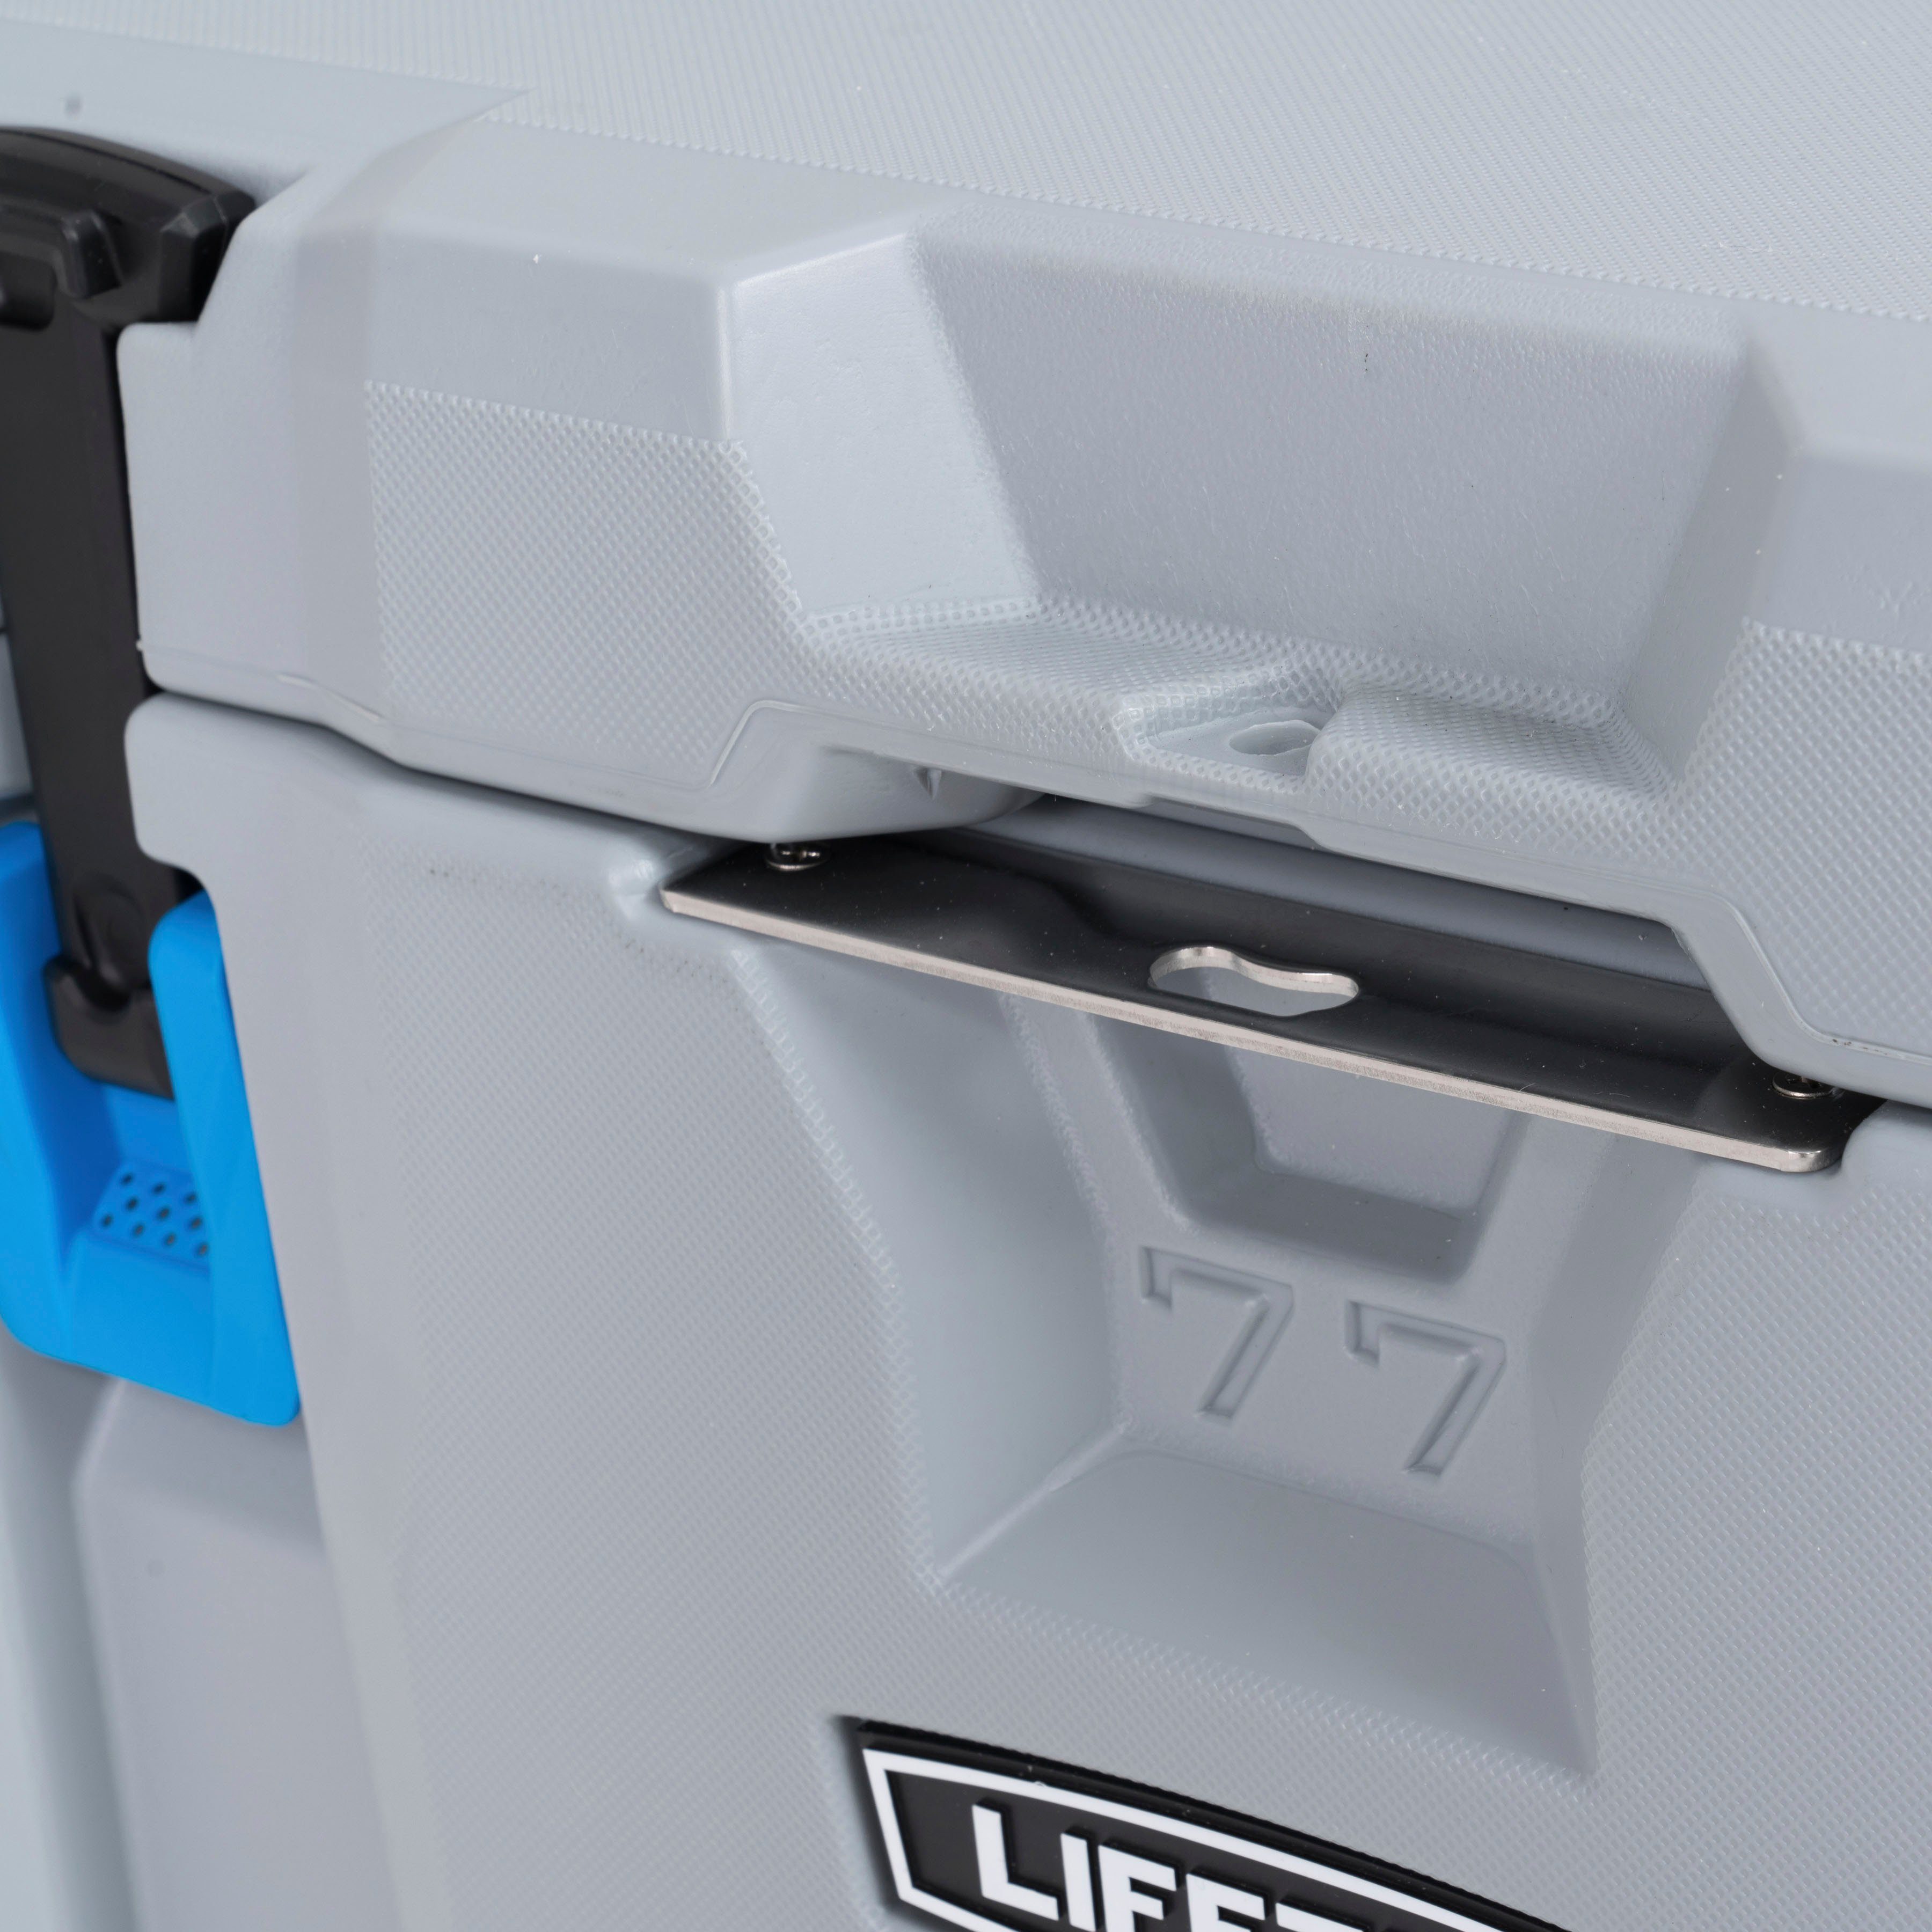 Lifetime Kühlbox Premium, 73 Urethan zweischichtigem l, aus